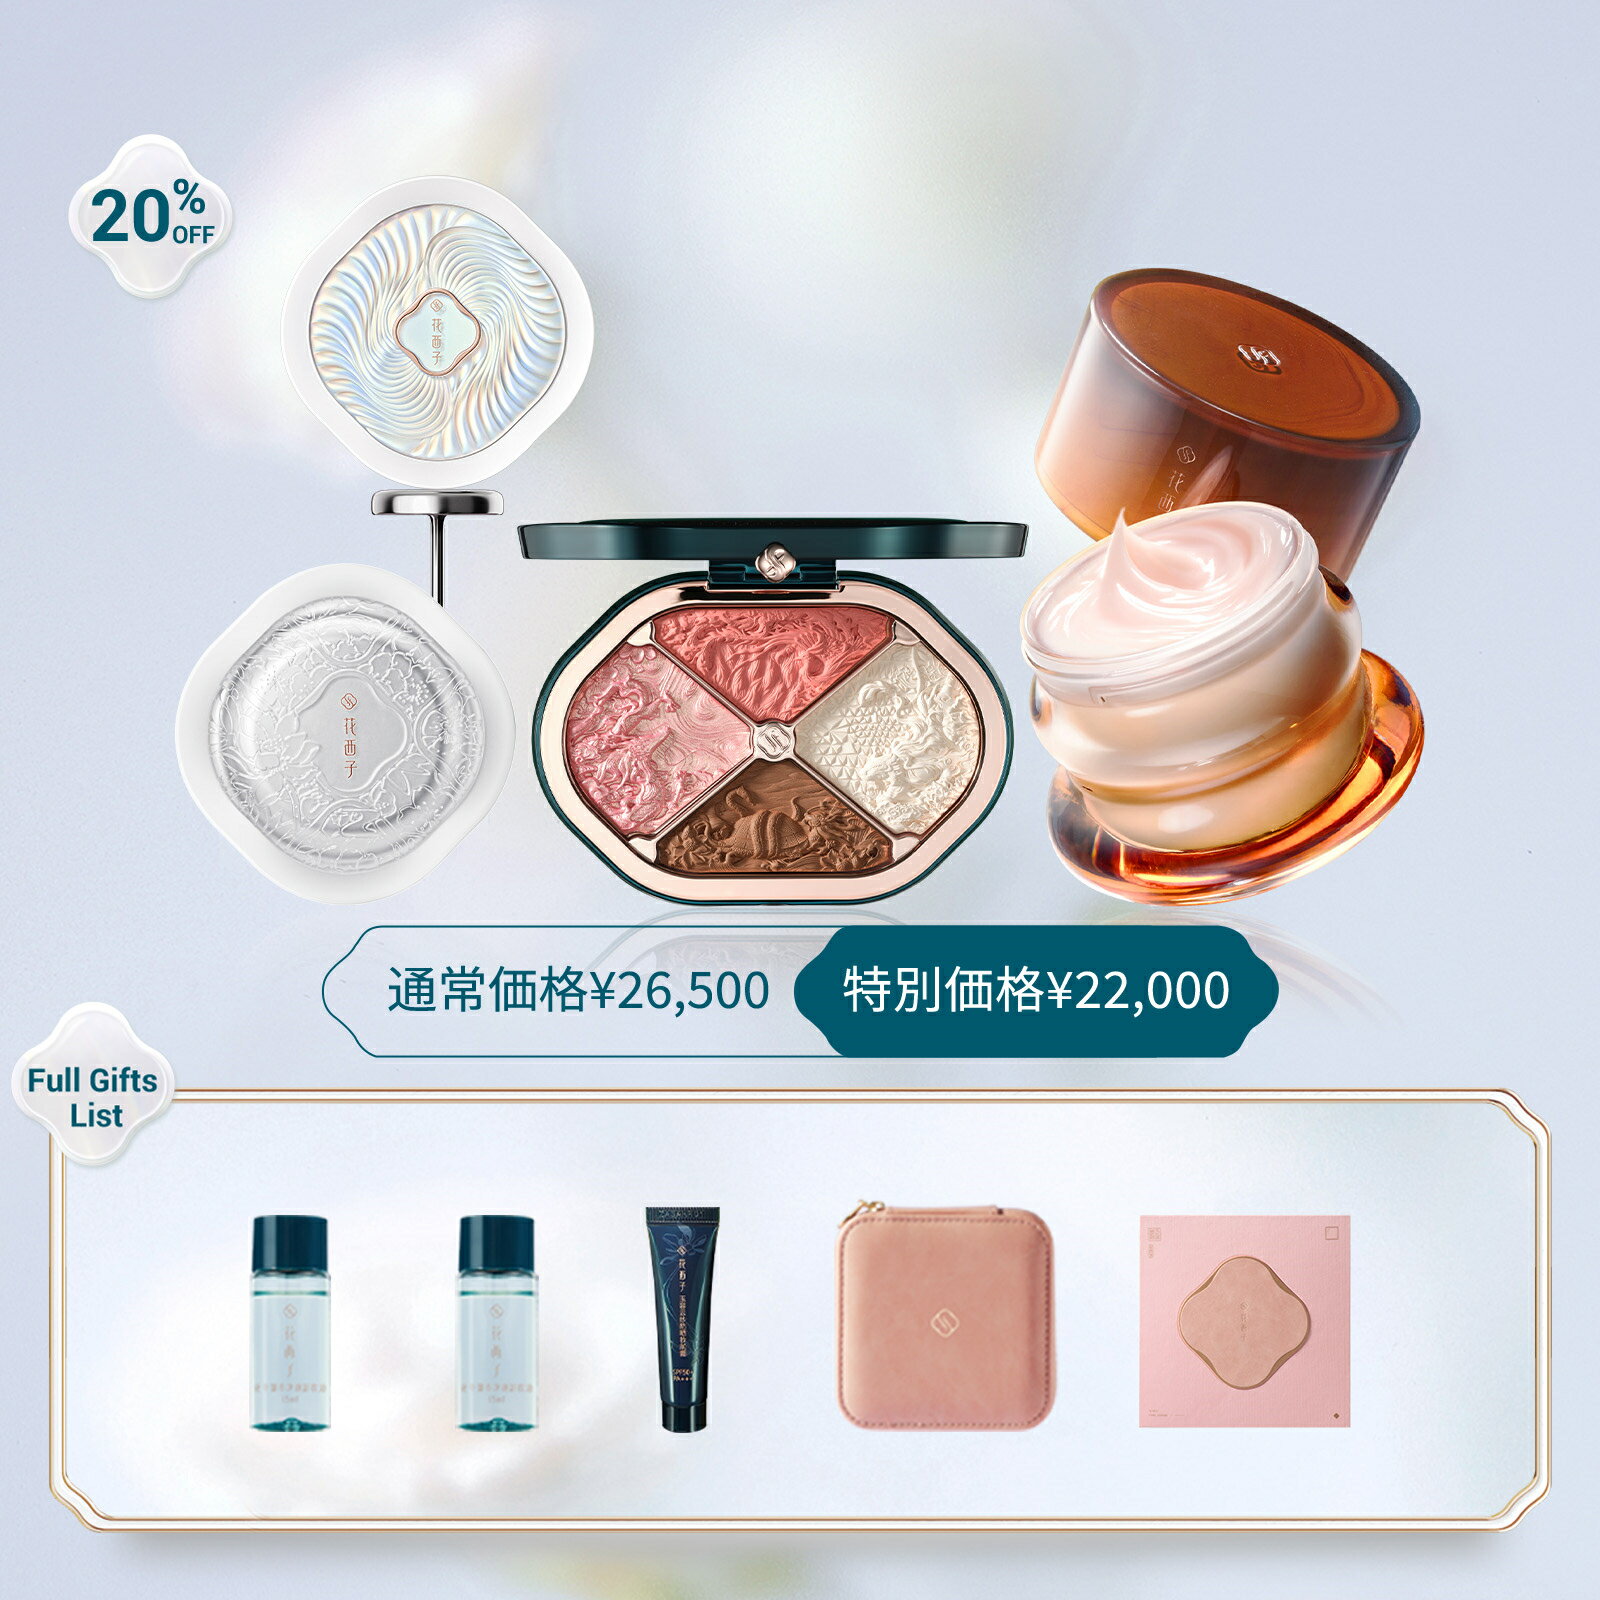 商品詳細 広告文責 Hangzhou YiGe Cosmetics Co., Ltd Tel.050-3159-5988 メーカー名 花西子 Florasis 輸入者名 本商品は個人輸入商品のため、購入者の方が輸入者となります。 製造国 中国 商品区分 化粧品 納期 2~3営業日以内に国際発送、10日以内にお届け予定 注意事項 ・当店でご購入された商品は、原則として、「個人輸入」としての取り扱いになり、全て中国の浙江省からお客様のもとへ直送されます。 ・個人輸入される商品は、全てご注文者自身の「個人使用・個人消費」が前提となりますので、ご注文された商品を第三者へ譲渡・転売することは法律で禁止されております。 ・通関時に関税・輸入消費税が課税される可能性があります。課税額はご注文時には確定しておらず、通関時に確定しますので、商品の受け取り時に着払いでお支払いください。 ＊色がある場合、モニターの発色の具合によって実際のものと色が異なる場合がある